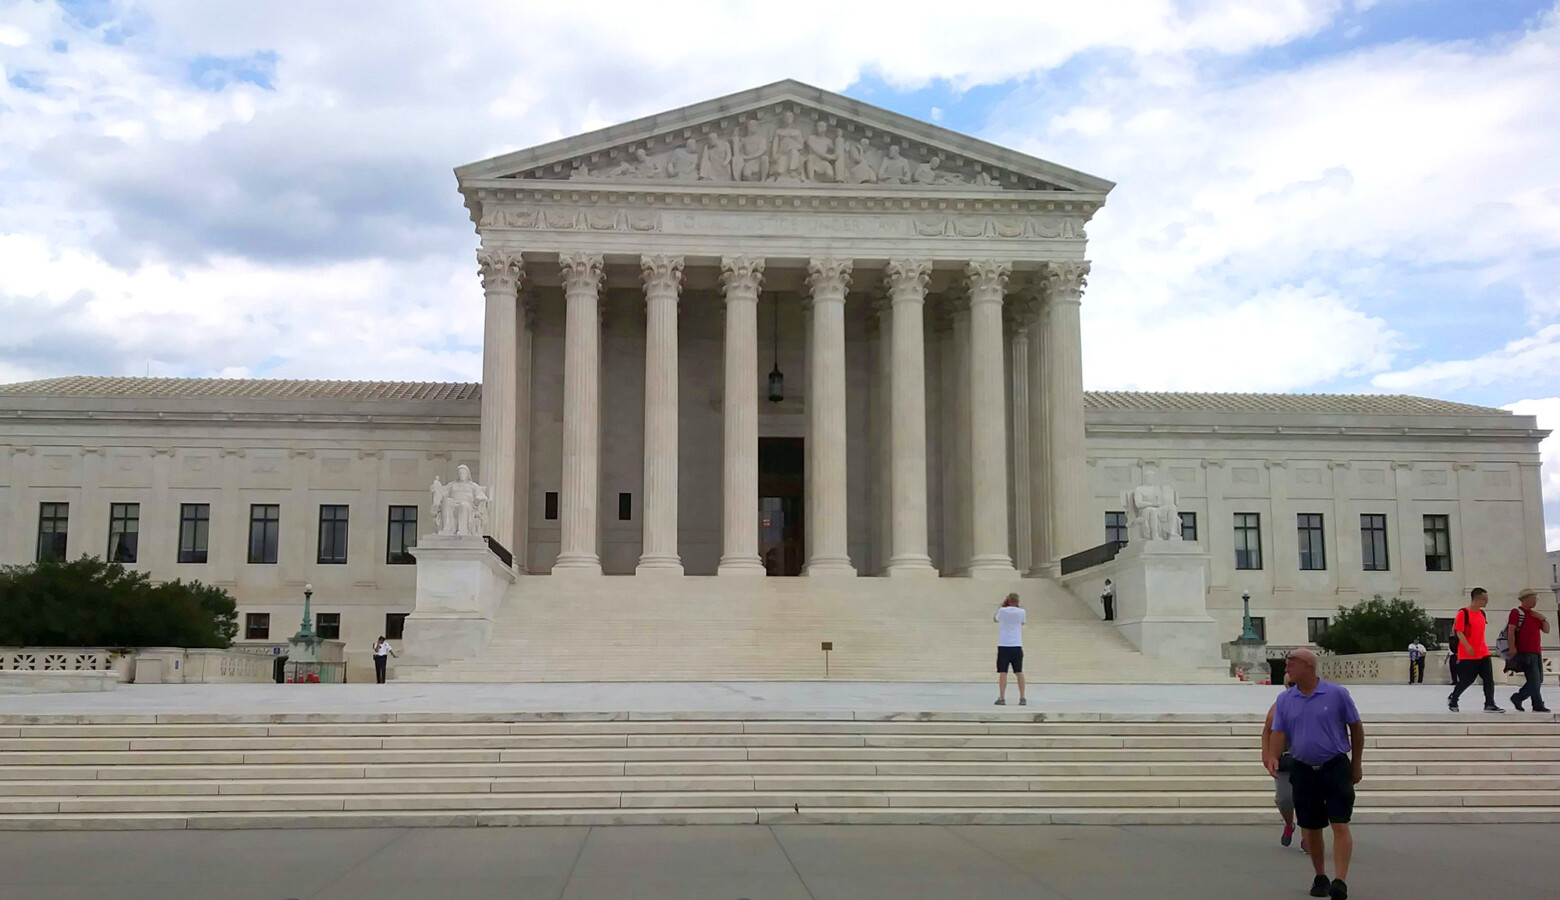 The U.S. Supreme Court in Washington, D.C. (Lauren Chapman/IPB News)